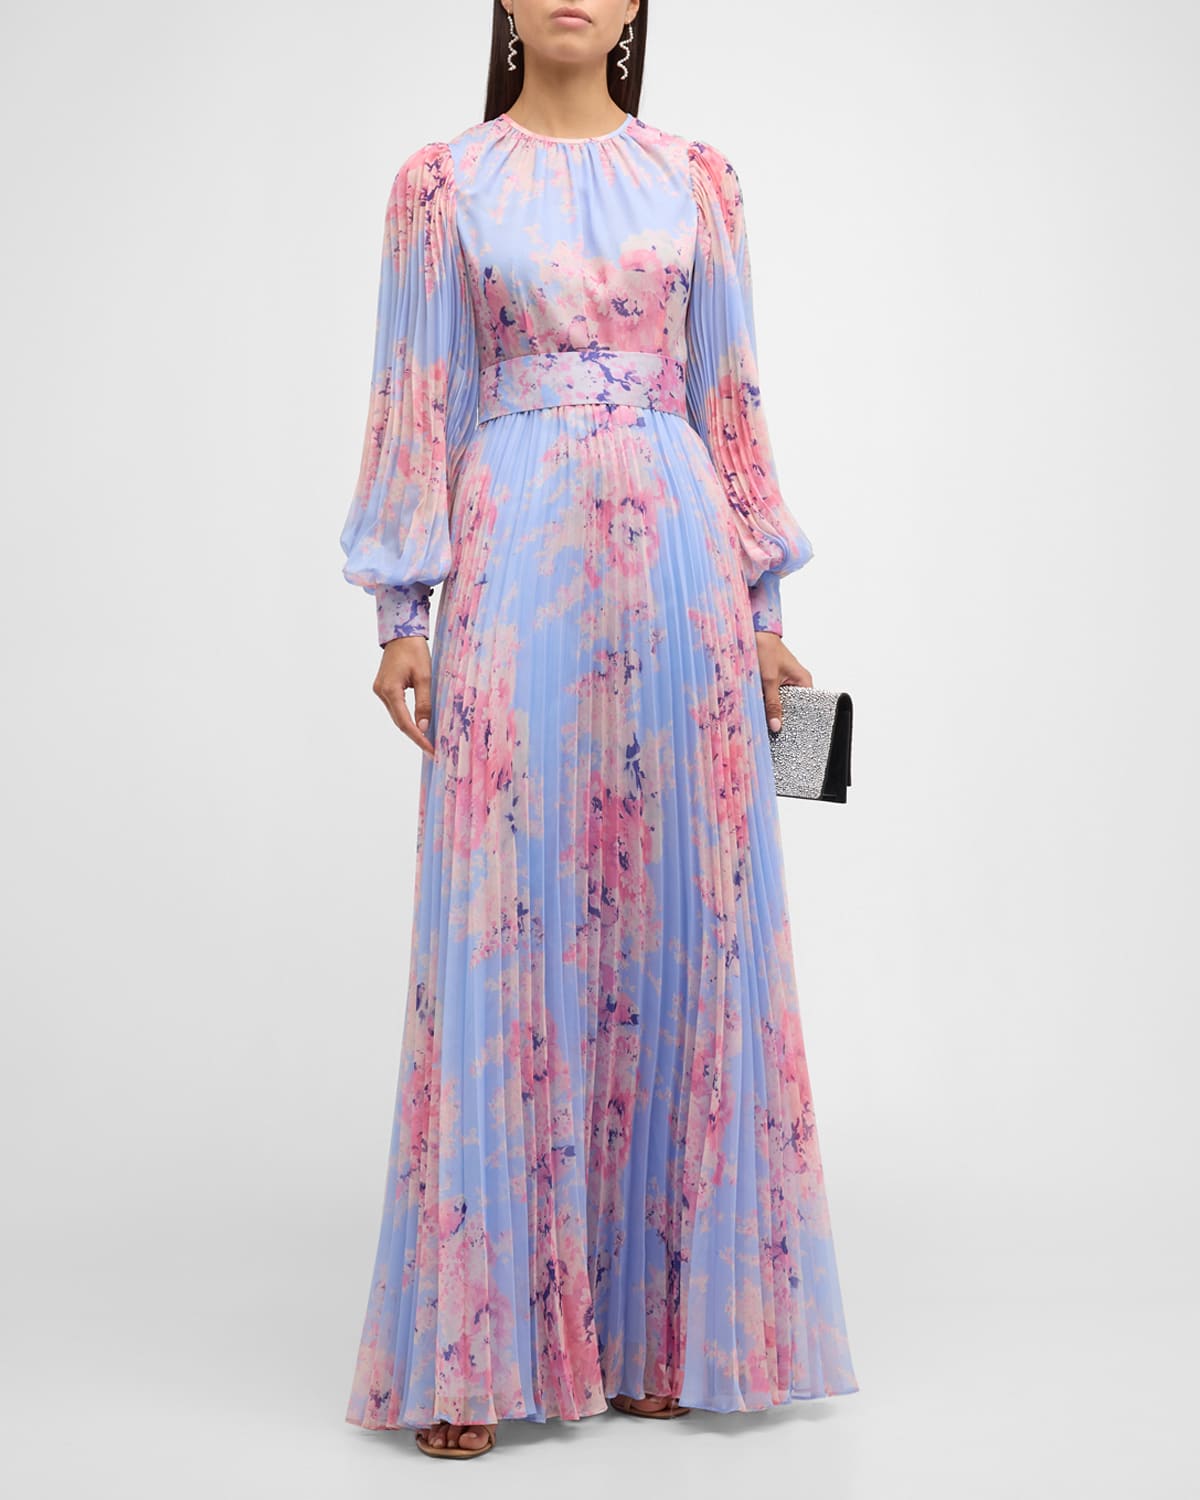 Rickie Freeman For Teri Jon Pleated Floral-print Blouson-sleeve Gown In Lt Blu Pnk